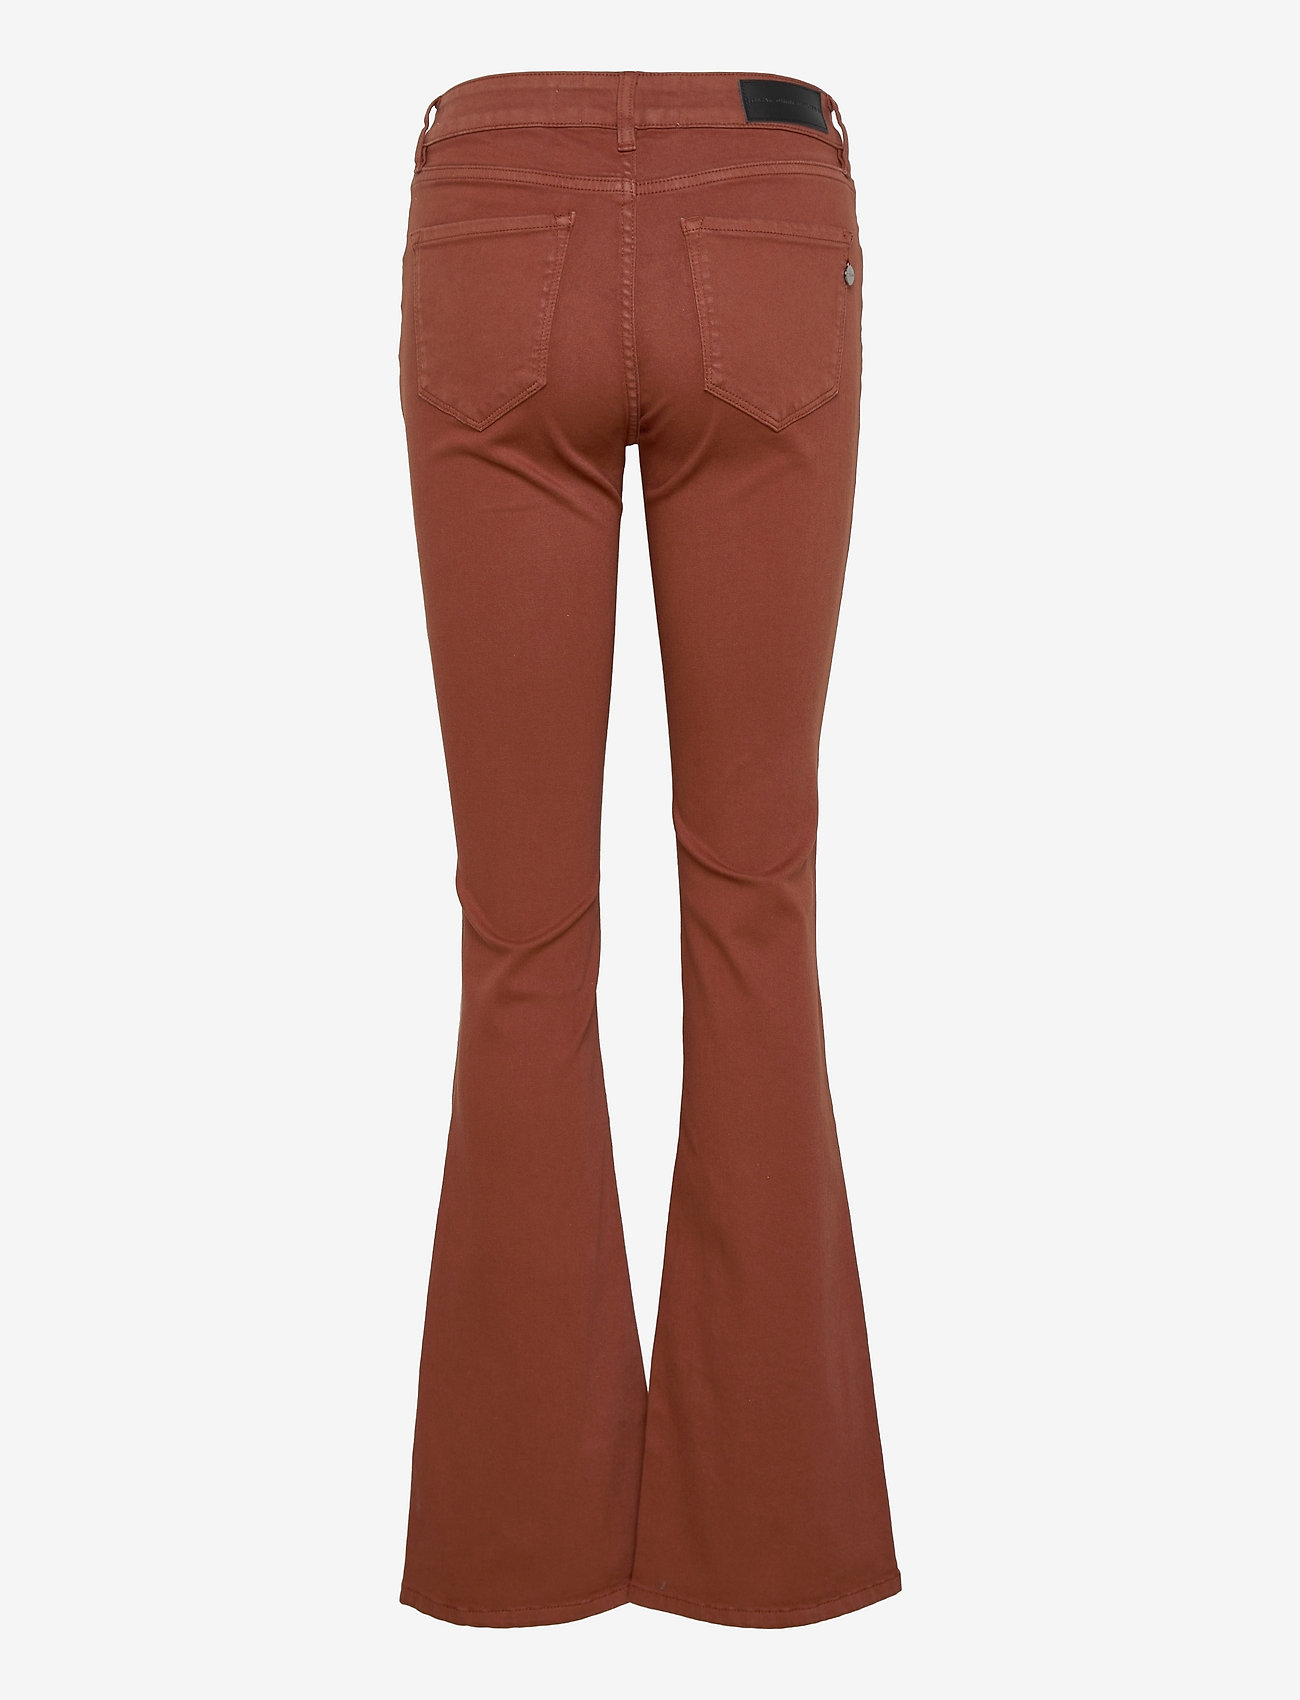 Pieszak - Marija flare jeans Col. - flared jeans - brown - 1